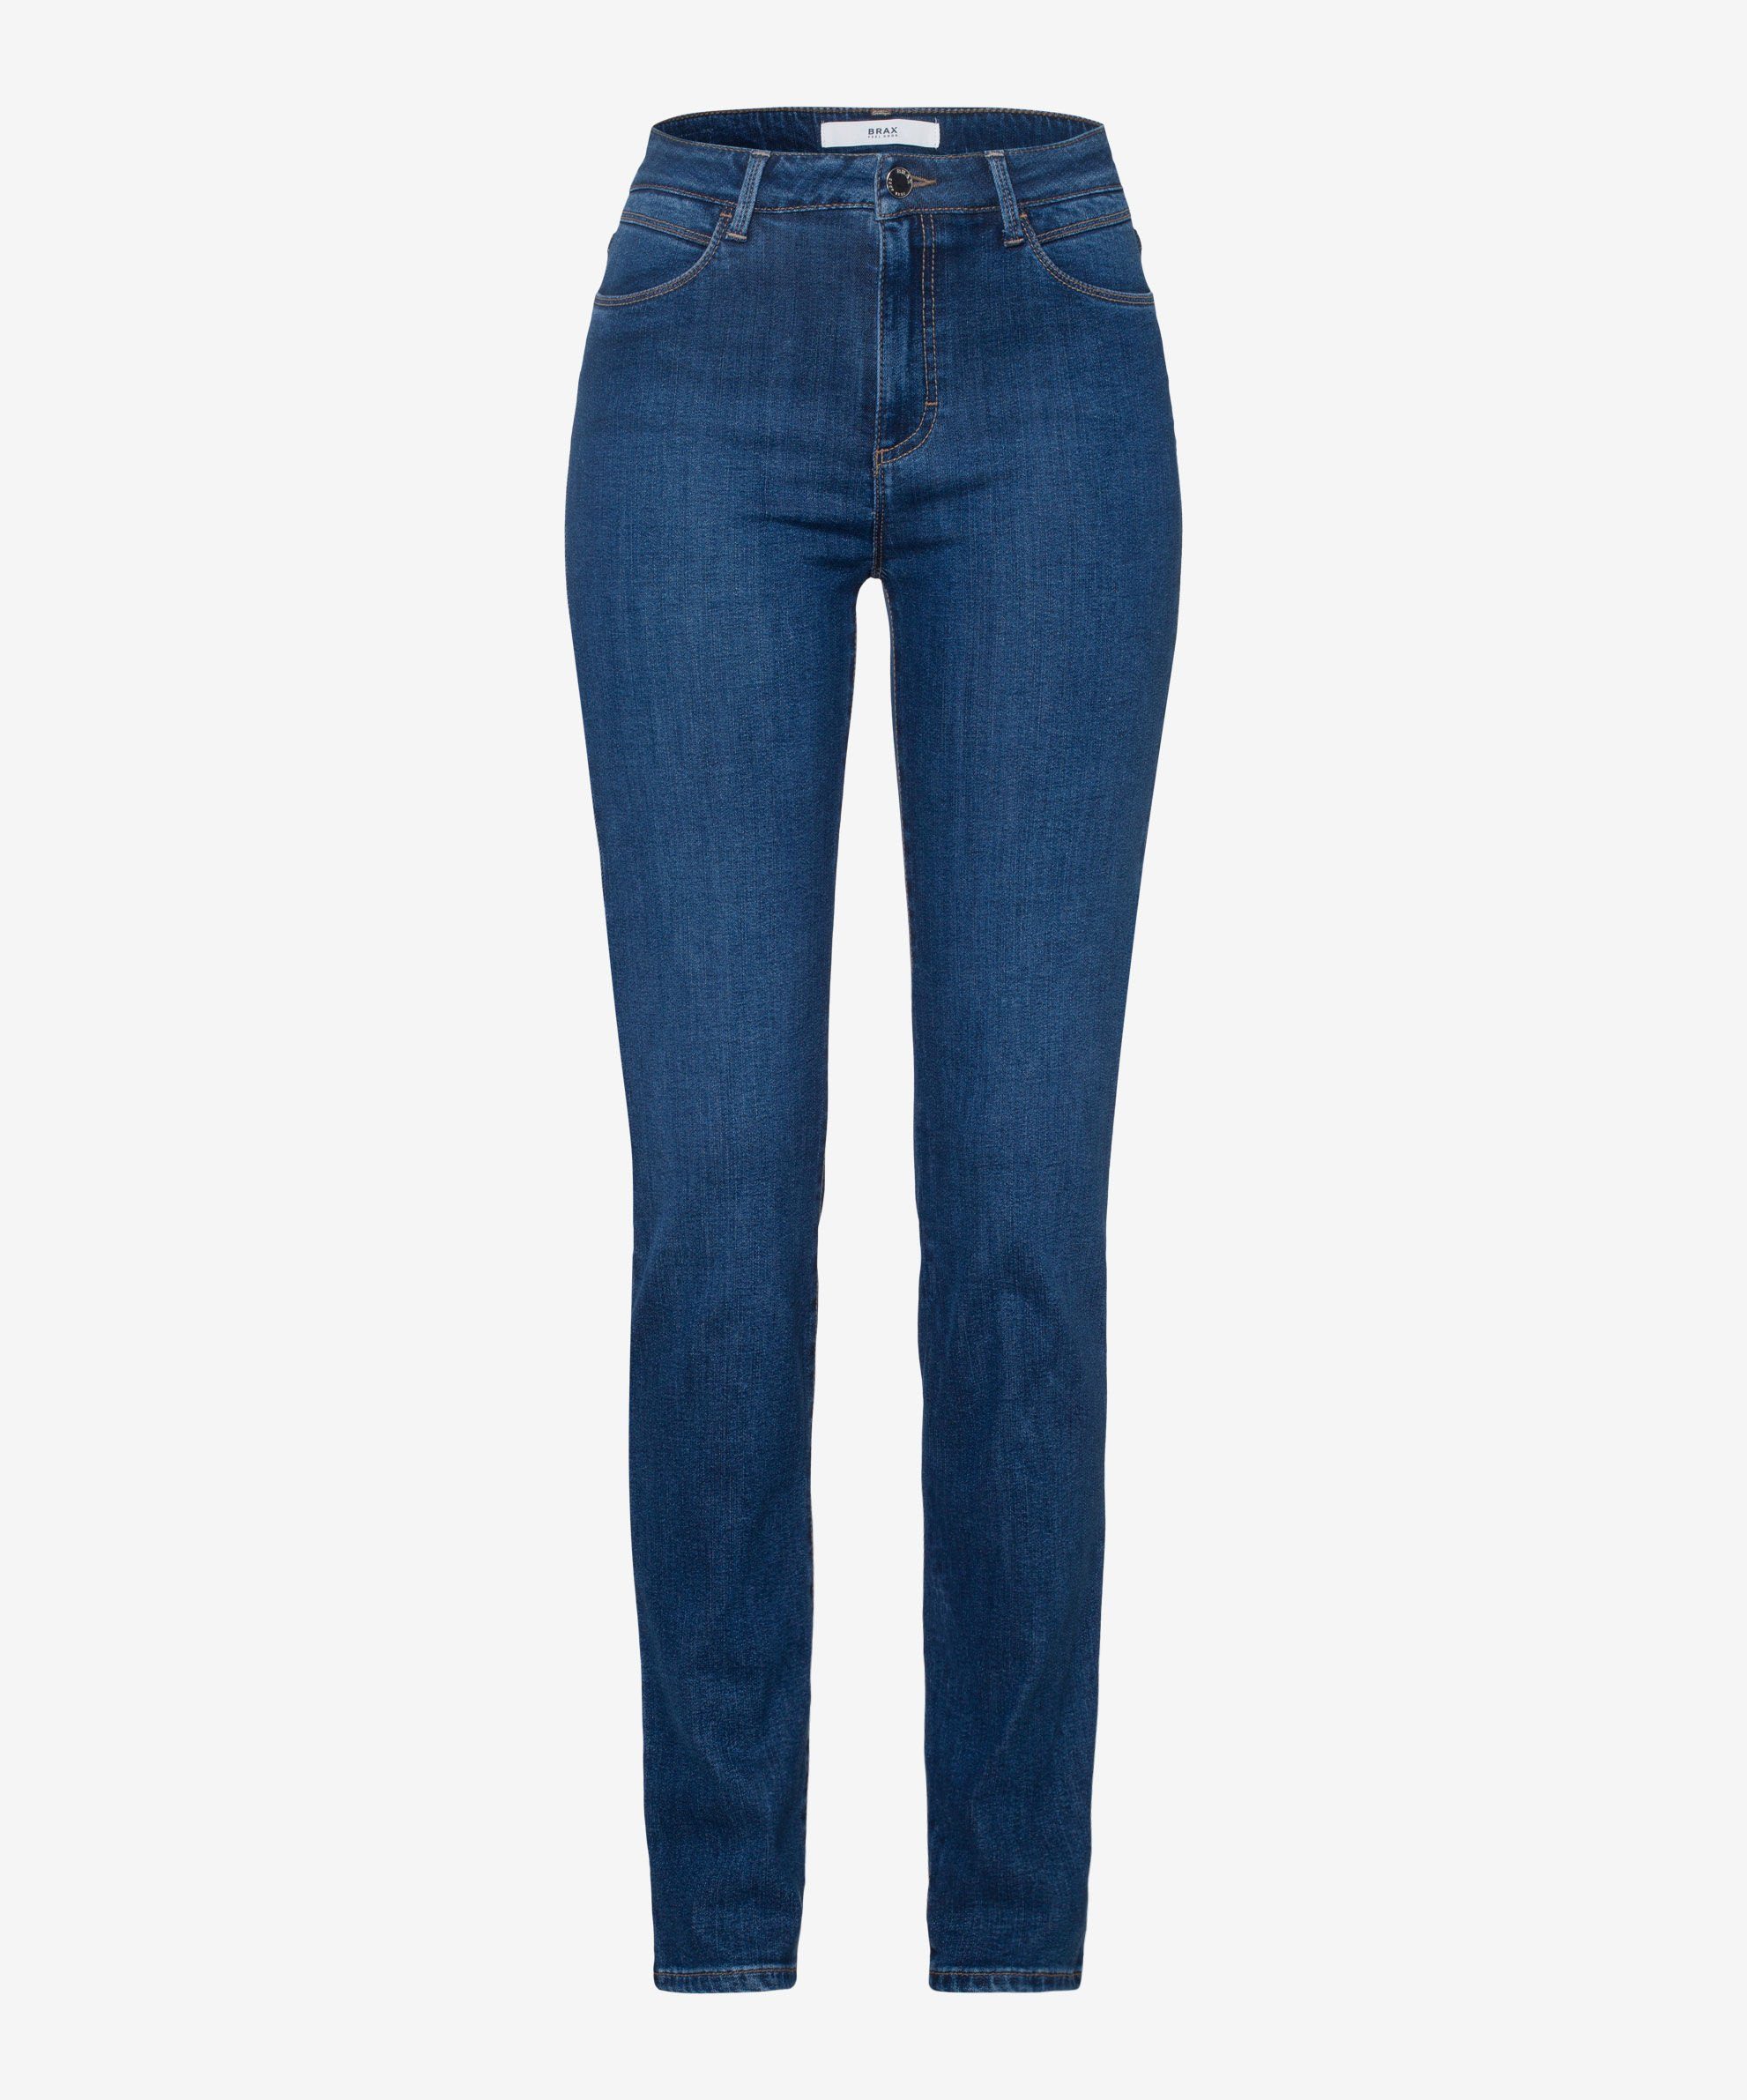 Brax Skinny-fit-Jeans Five-Pocket-Röhrenjeans slightly used regular blue